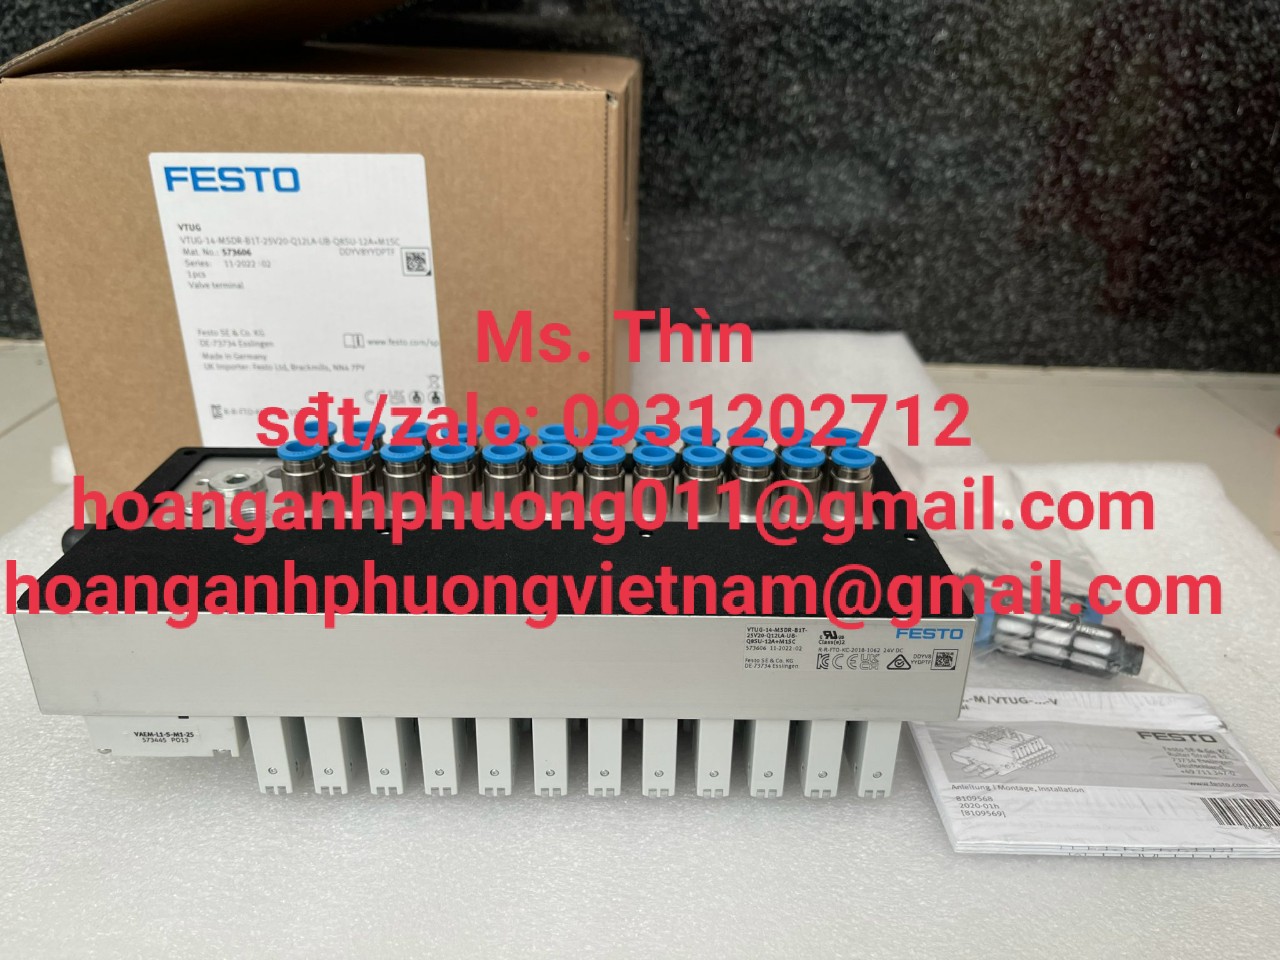 Festo VTUG-14-MSDR-B1T-25V20-Q12LA-UB-Q8SU-12A+M1SC